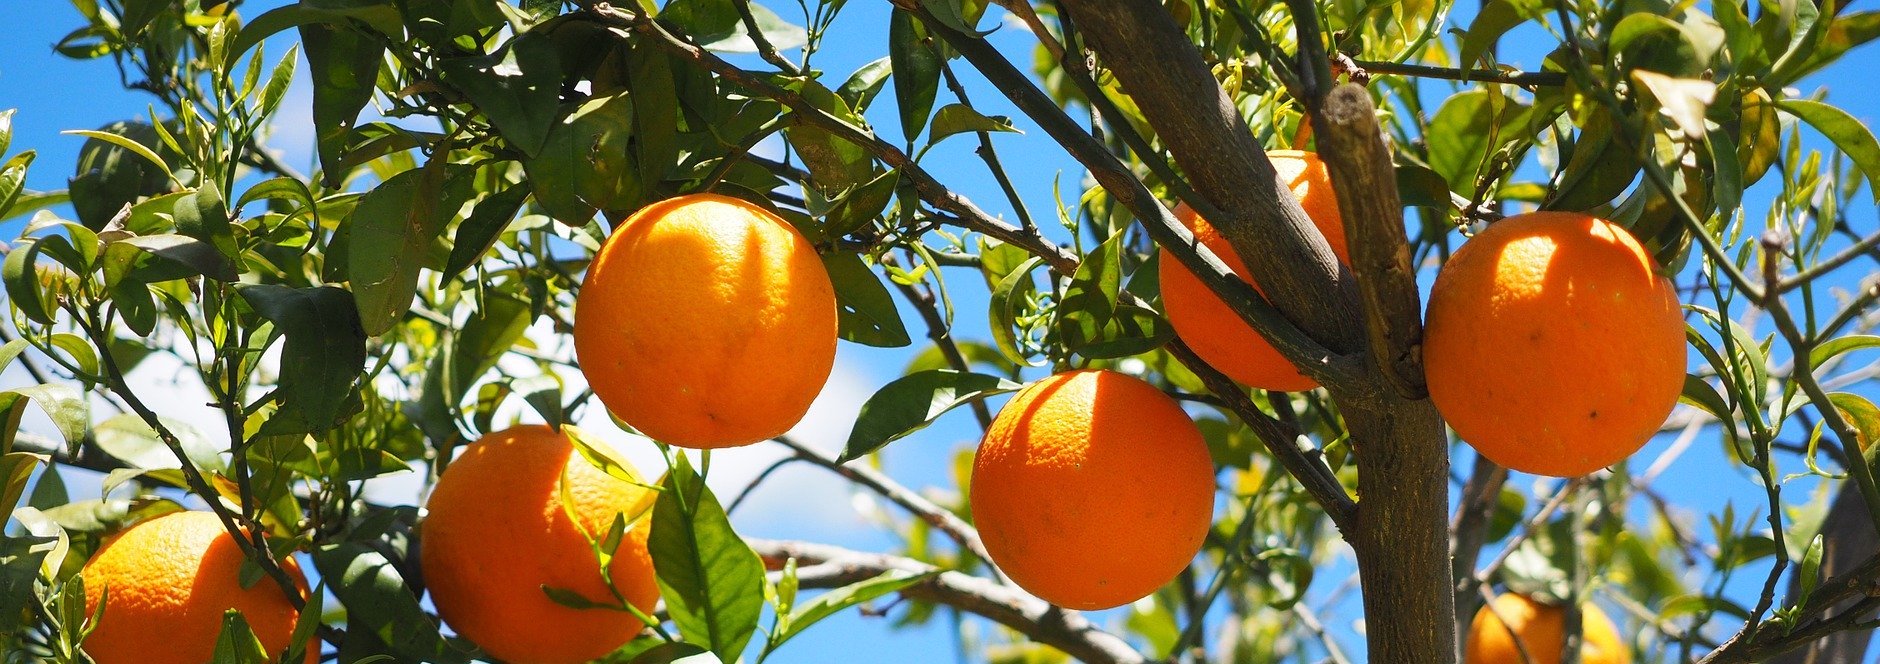 La marmelade d'oranges bio